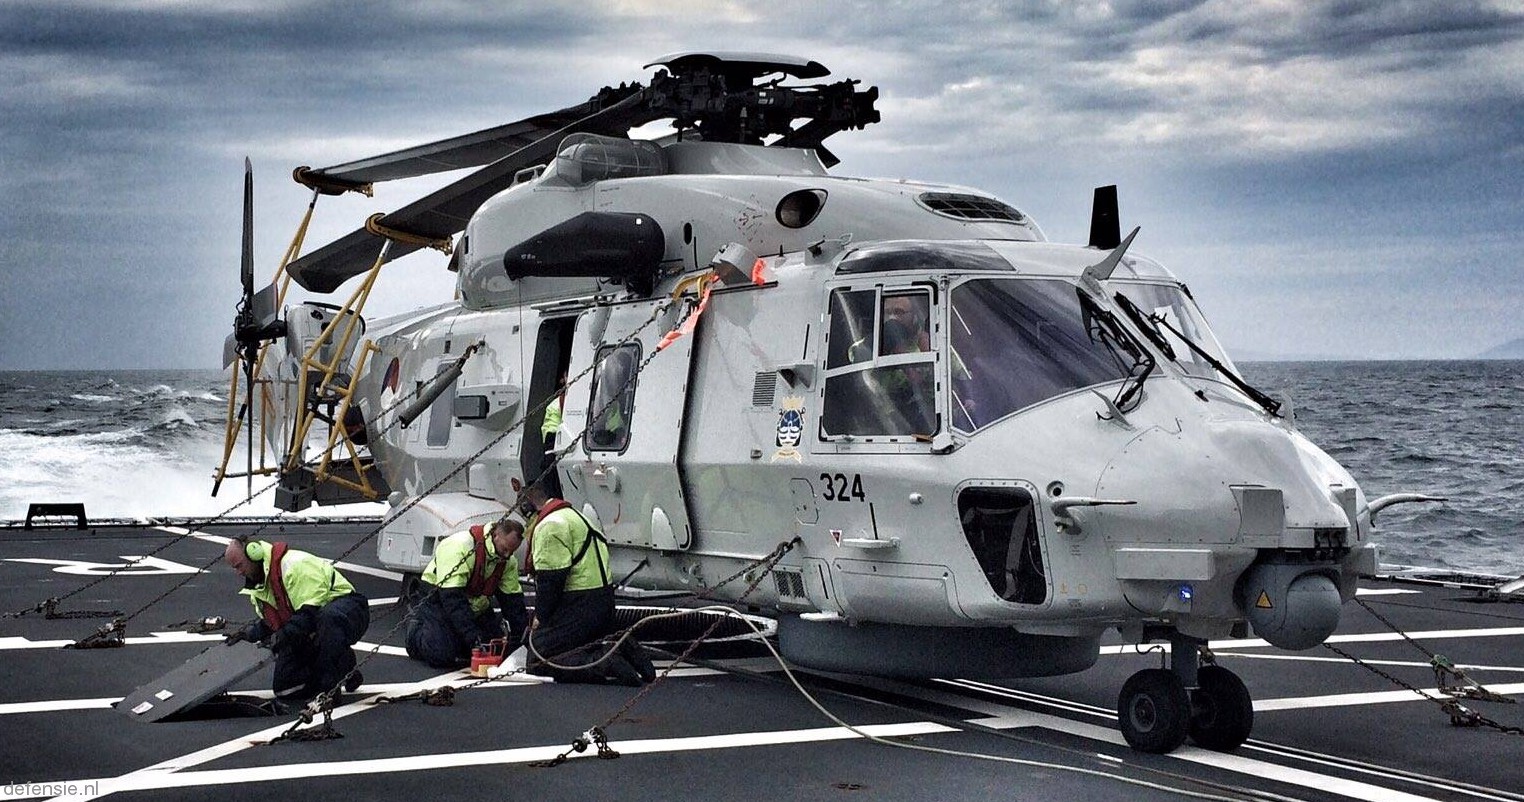 nh90 nfh helicopter royal netherlands navy koninklijke marine n-324 02